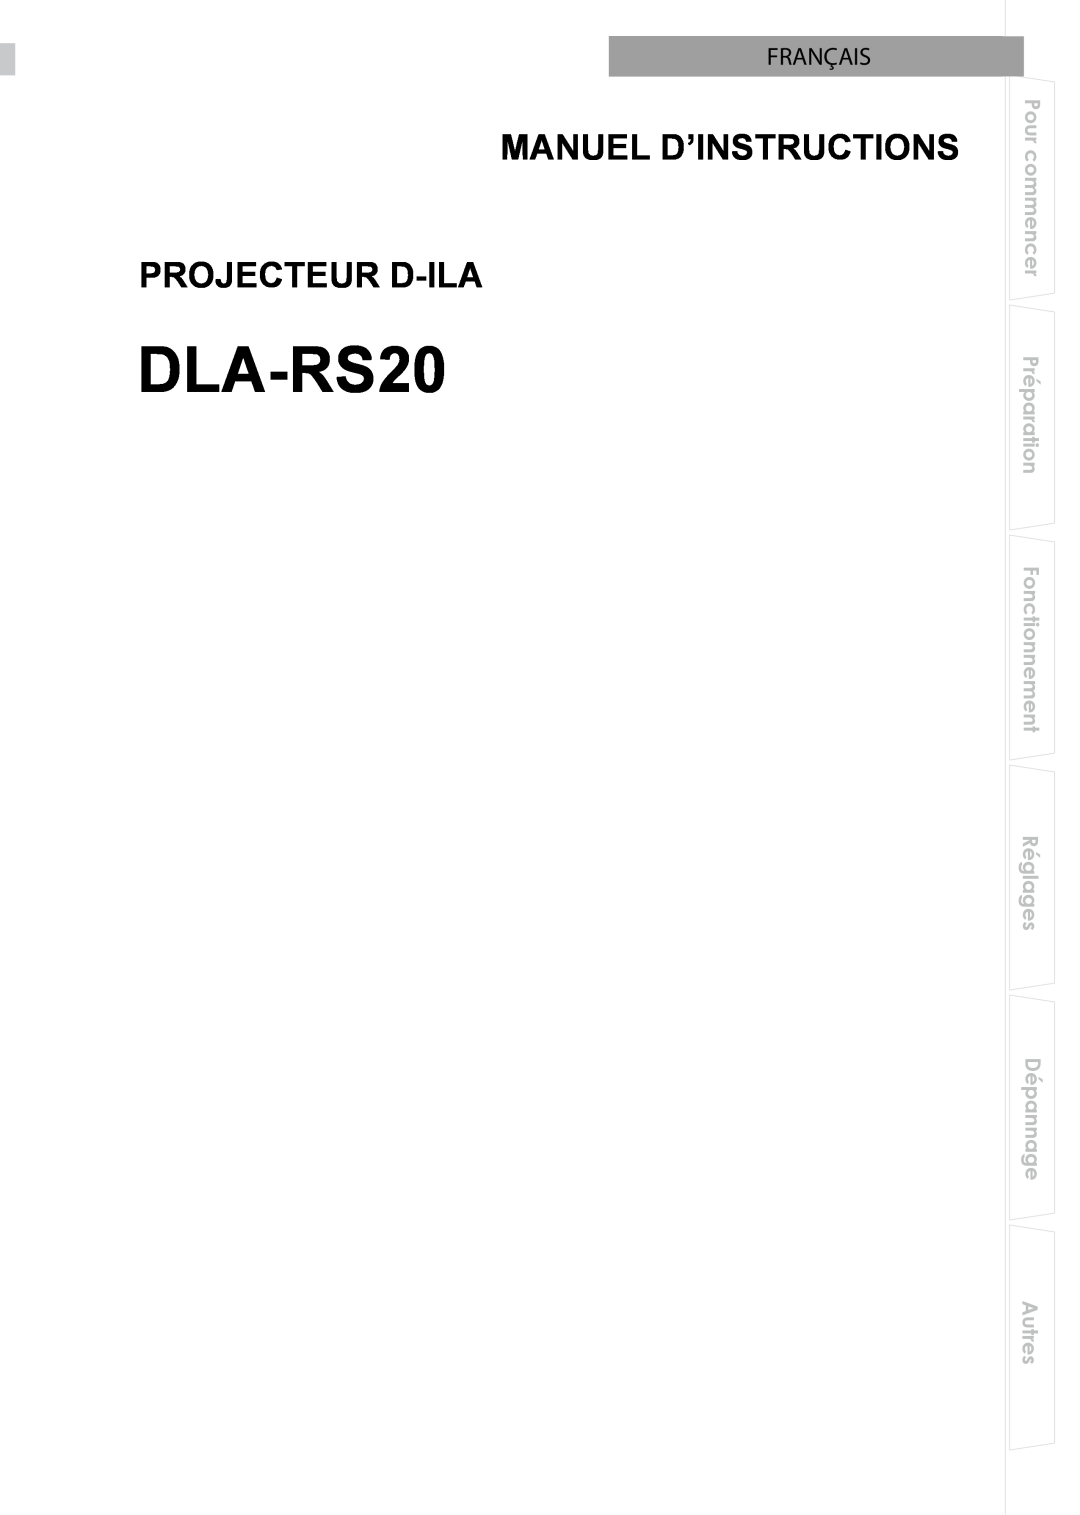 JVC PB006596599-0 manual Manuel D’Instructions Projecteur D-Ila, Français, DLA-RS20 